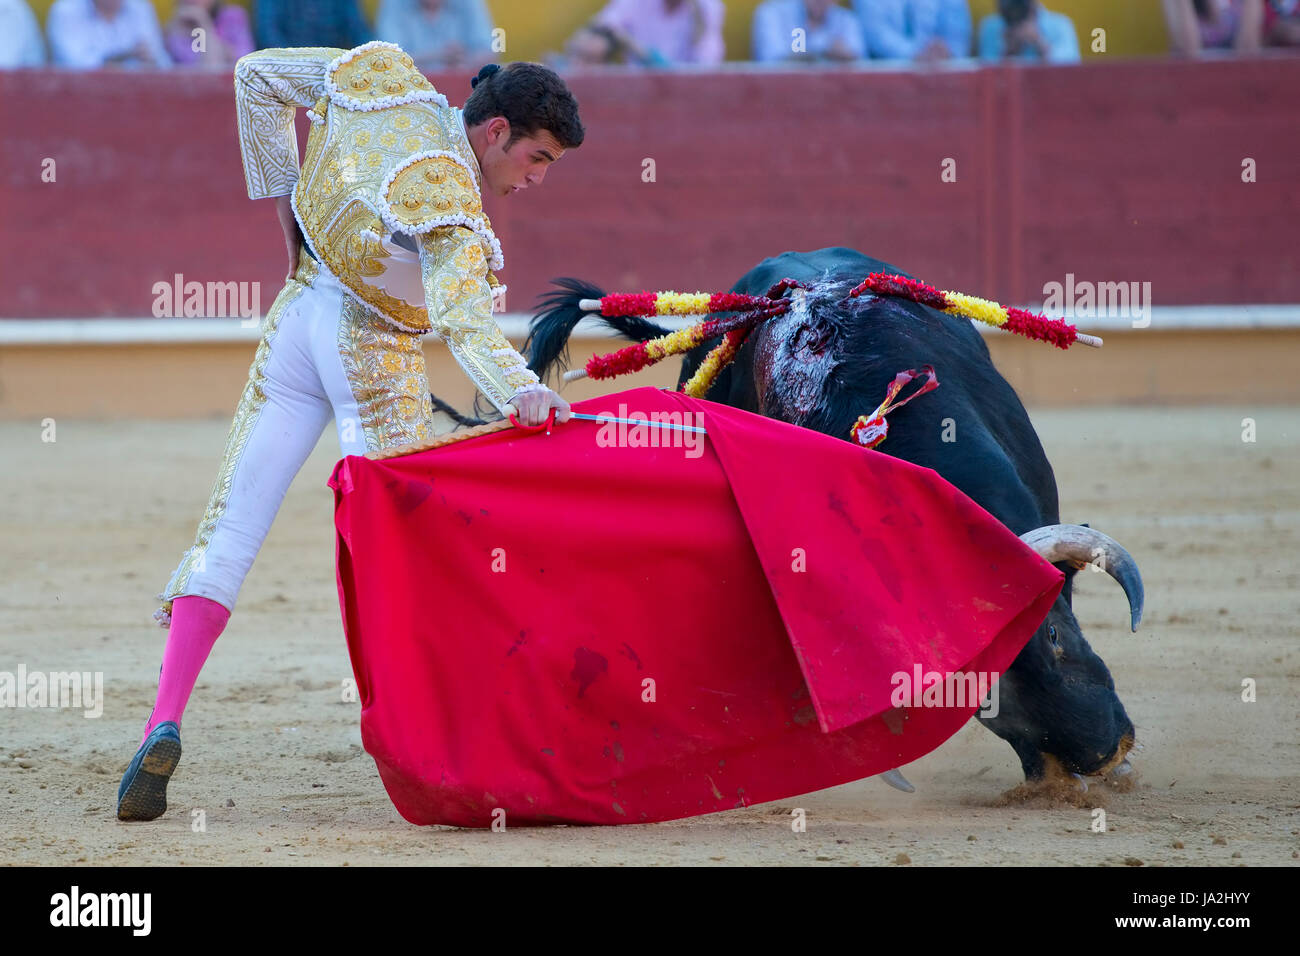 Un detalle de una corrida de toros en España Foto de stock